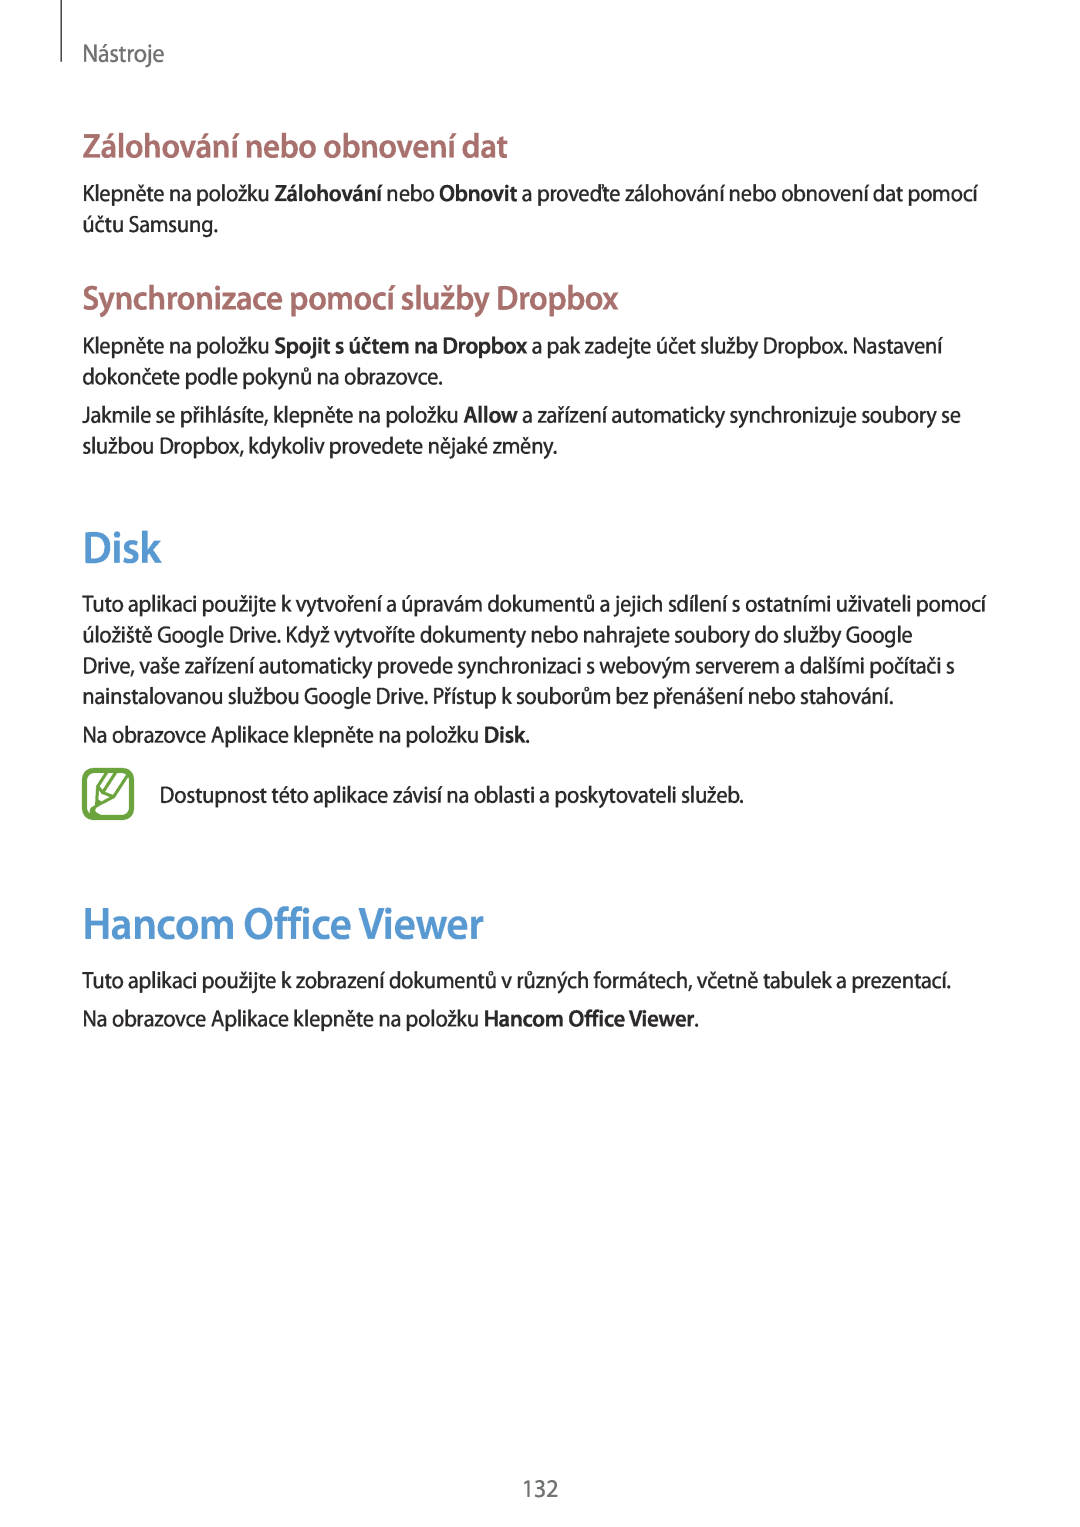 Samsung SM-P9050ZKAXEO manual Disk, Hancom Office Viewer, Zálohování nebo obnovení dat, Synchronizace pomocí služby Dropbox 